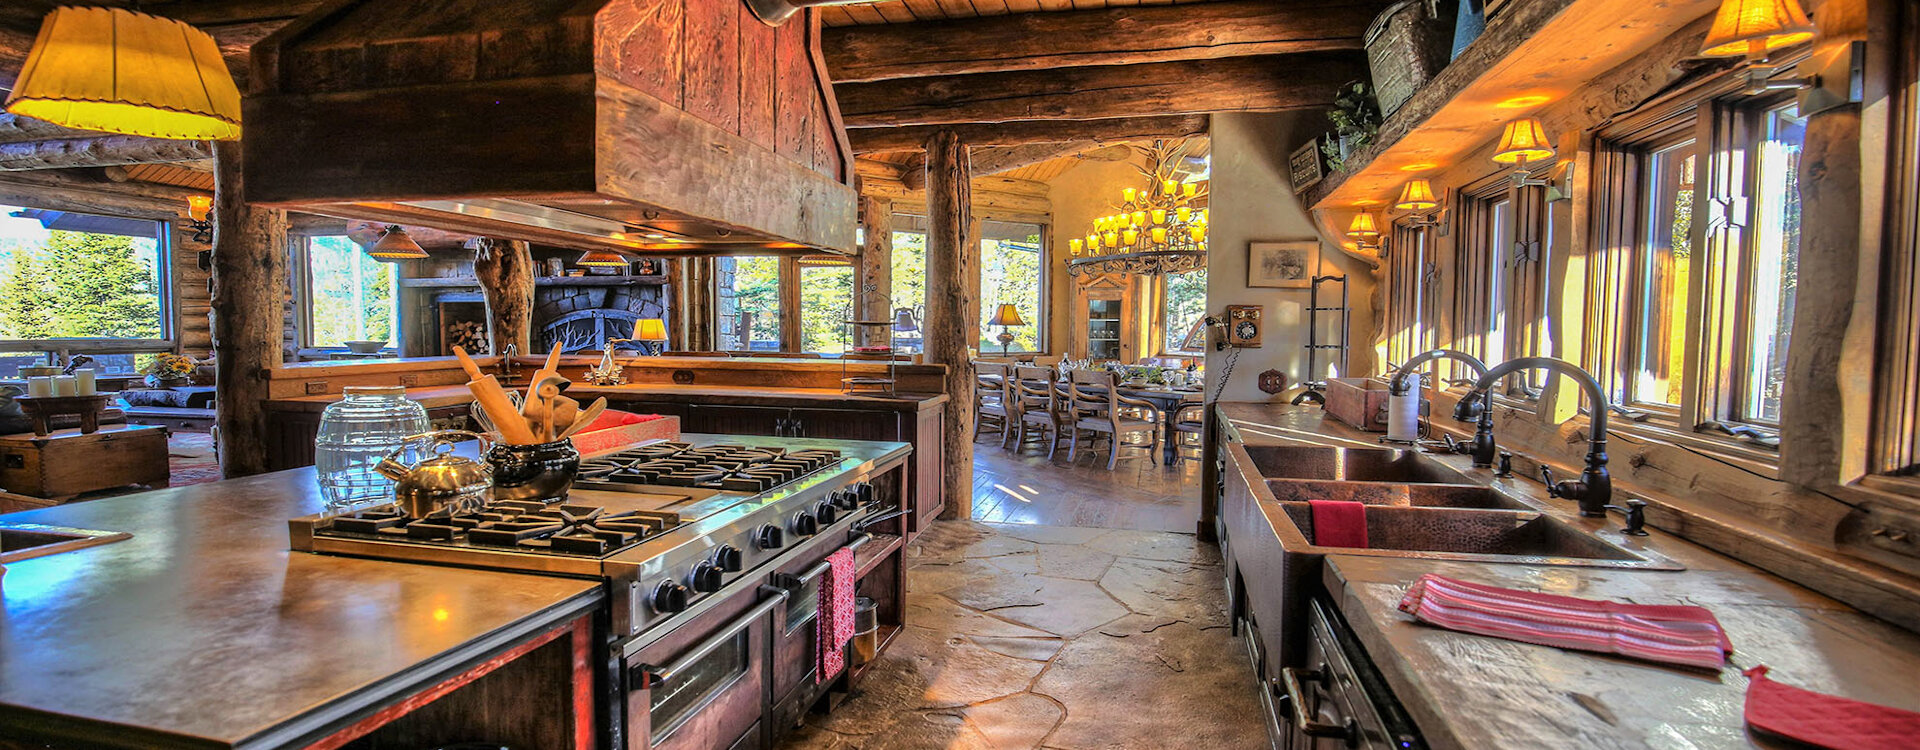 11-telluride-castlewood-kitchen-reverse